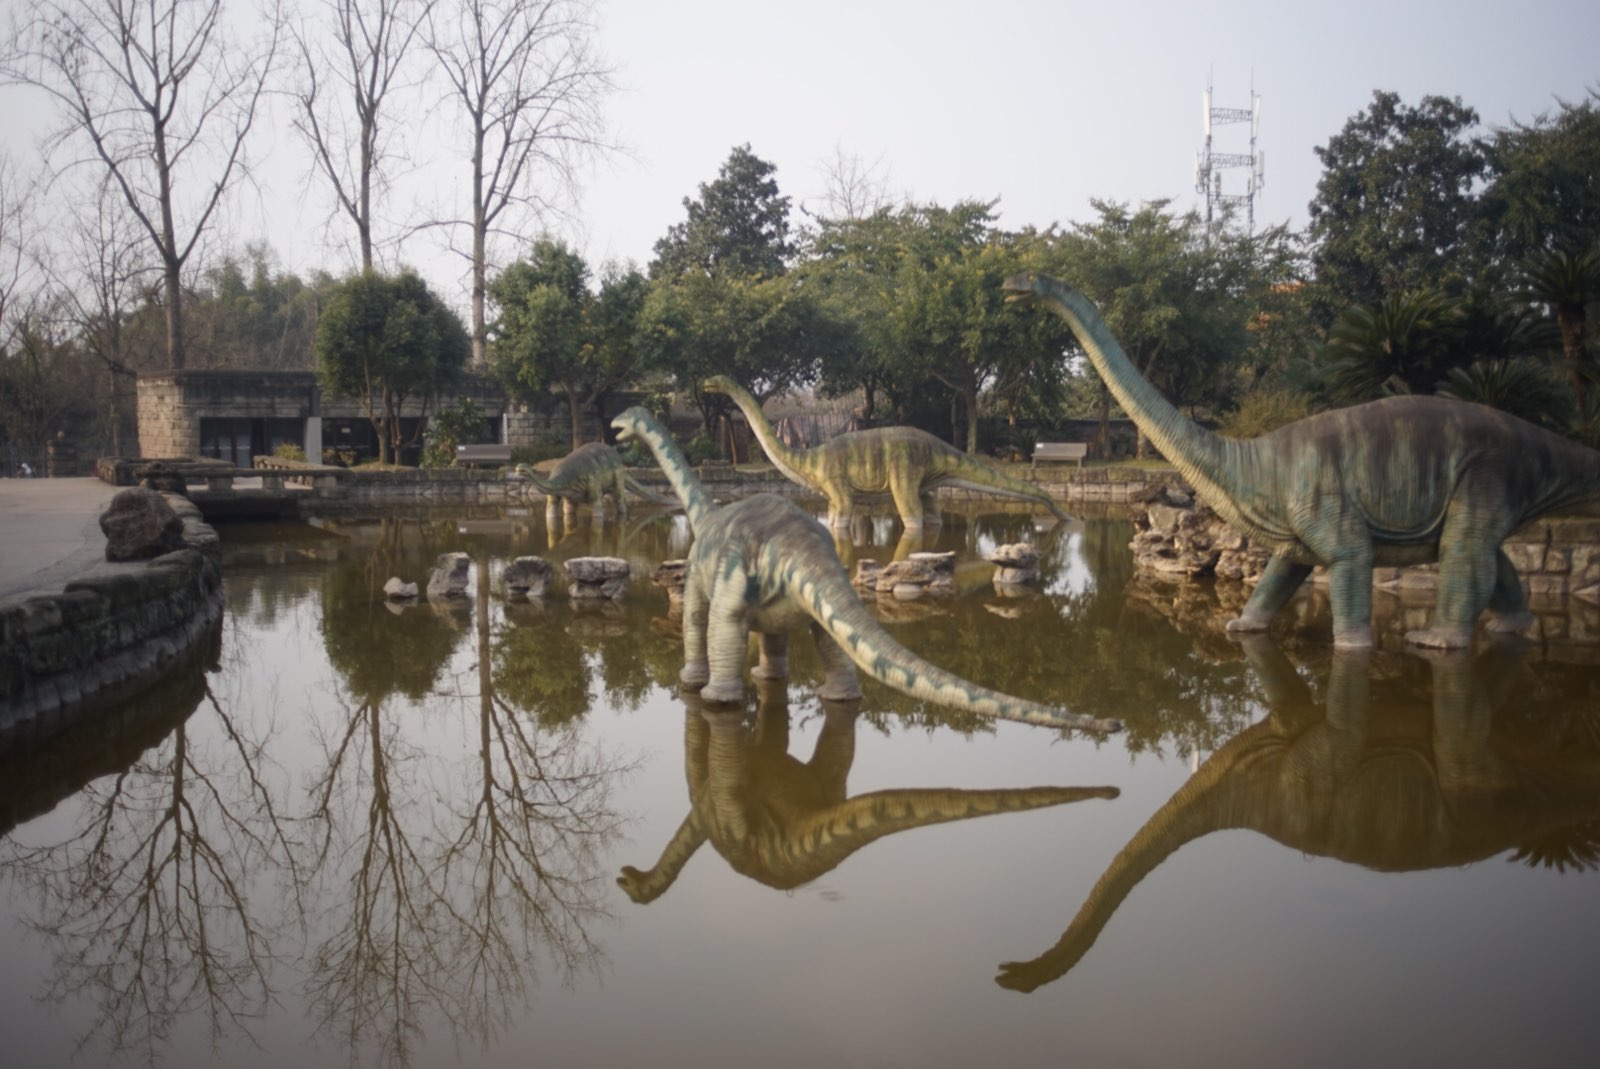 世界三大恐龙博物馆之一，可能修的比较早，设施显得旧.进门的恐龙山有仿真